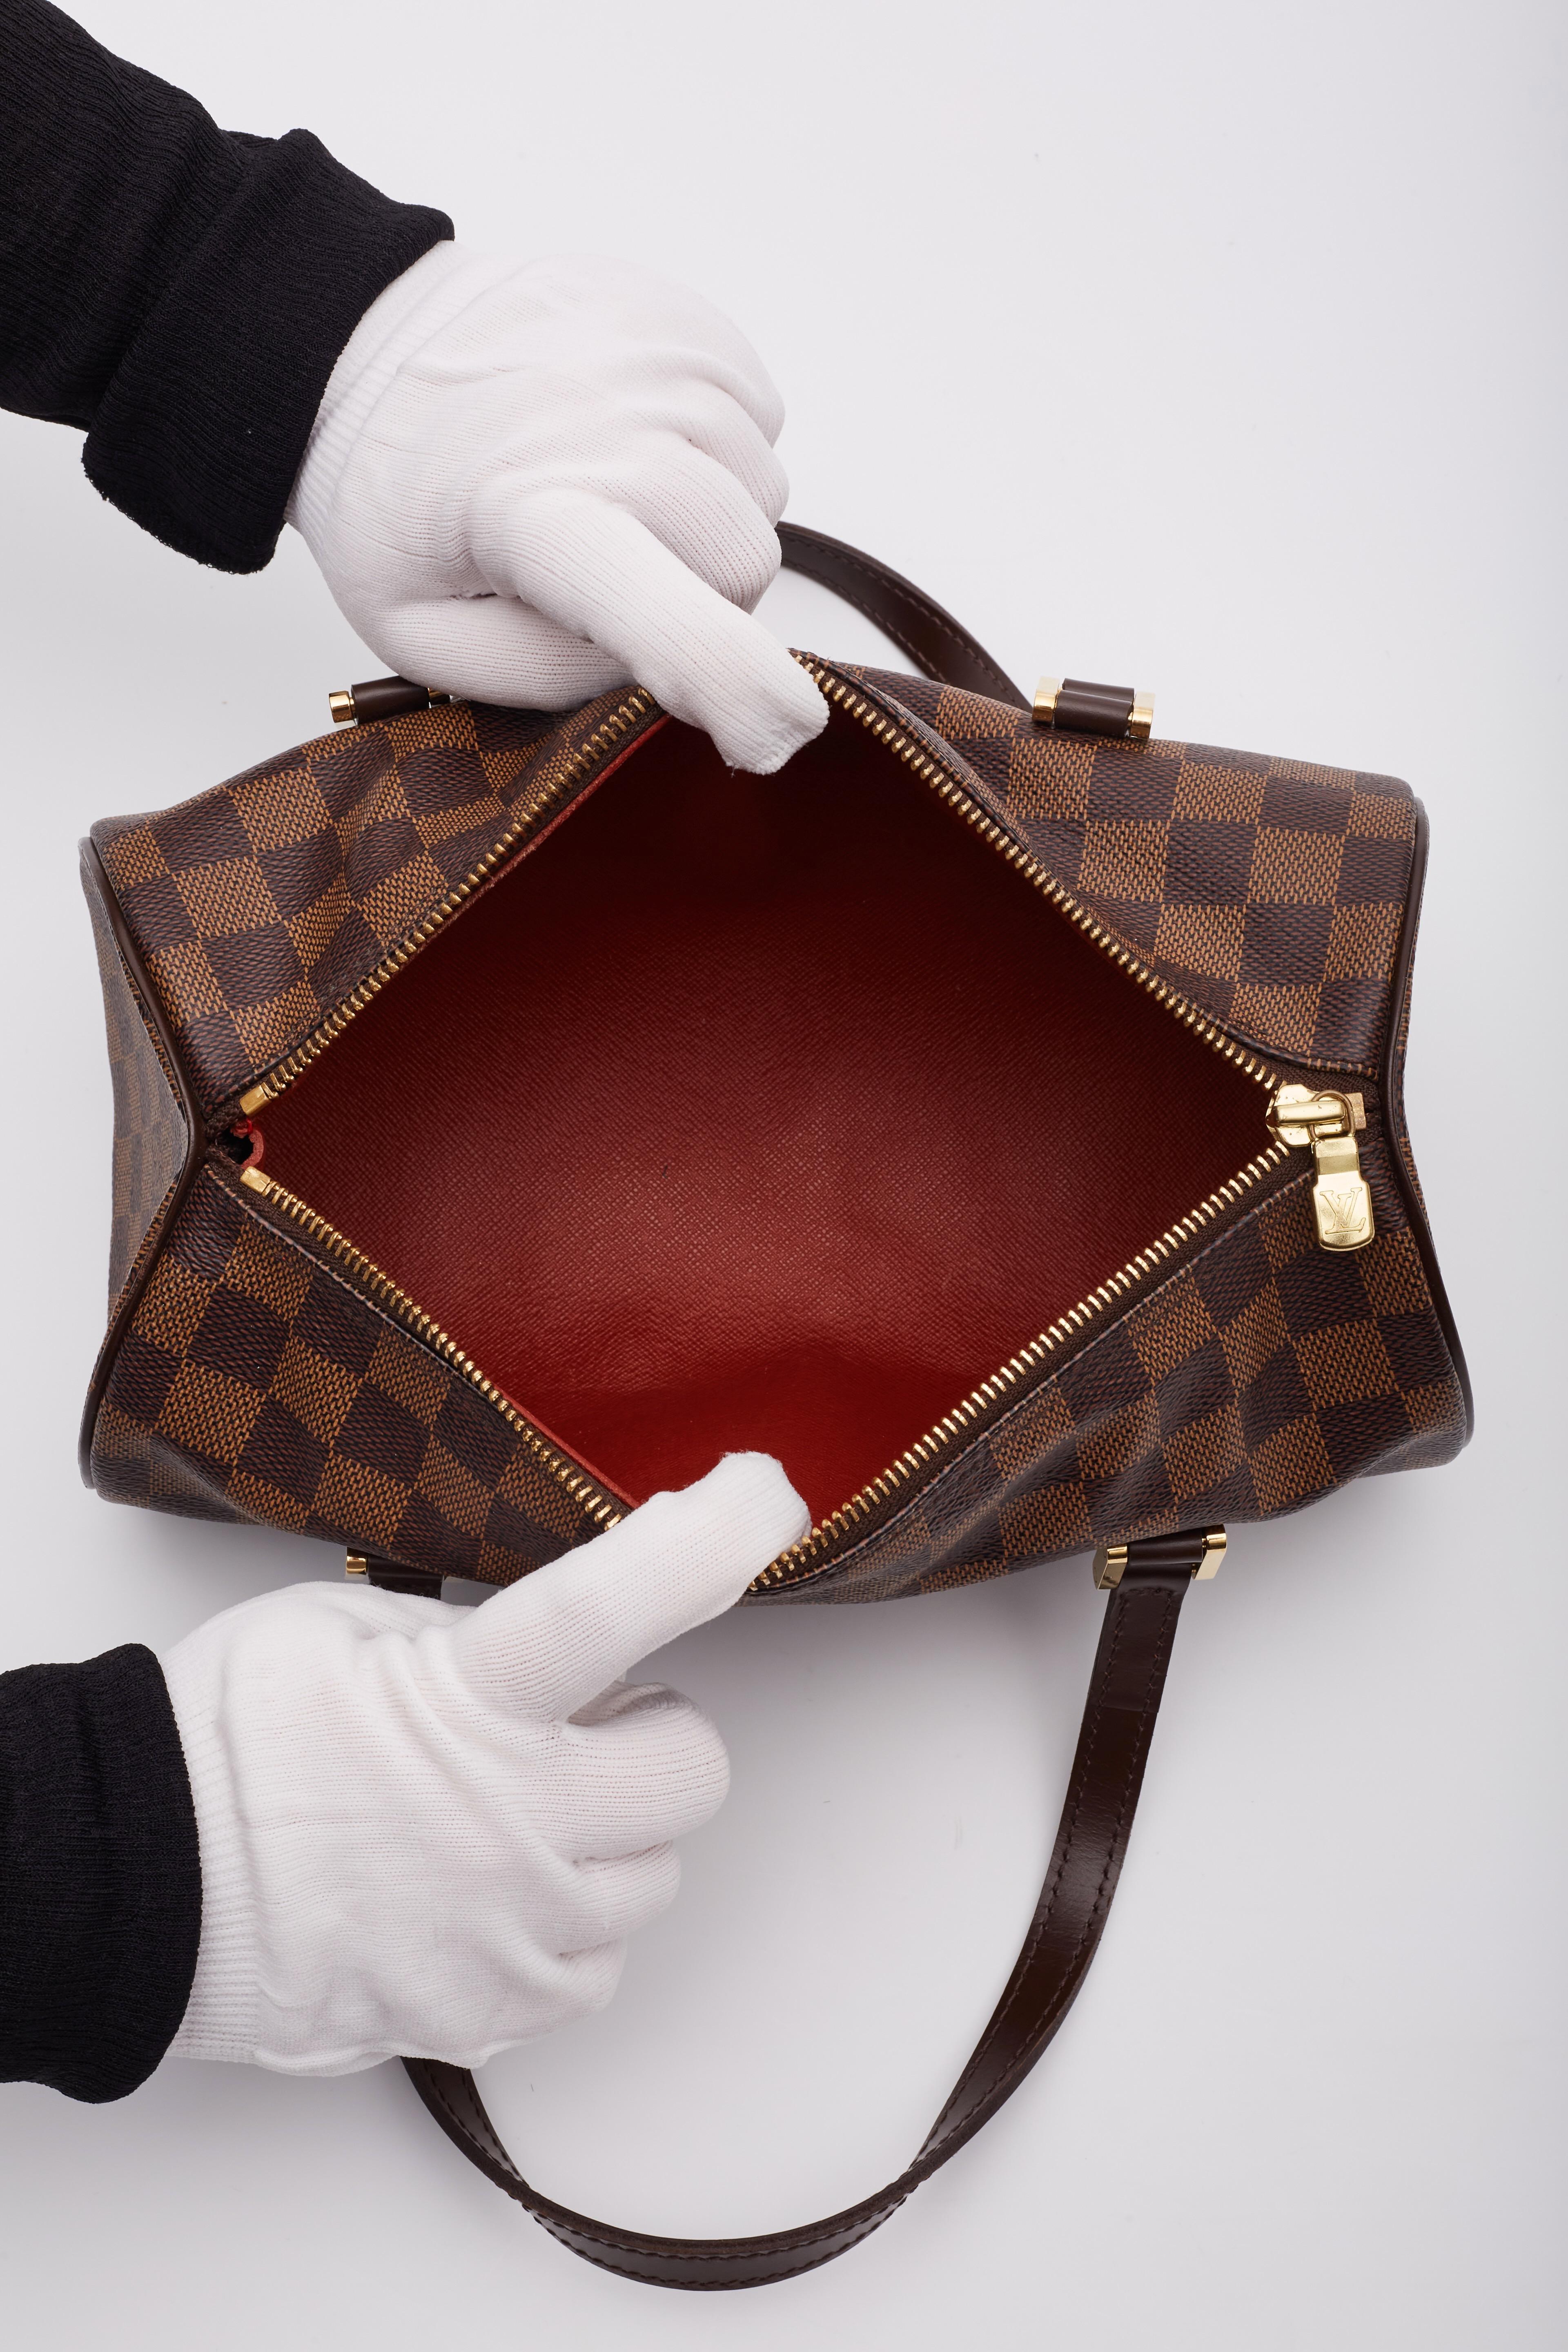 Louis Vuitton Damier Ebene Papillon 30 Shoulder Bag For Sale 5